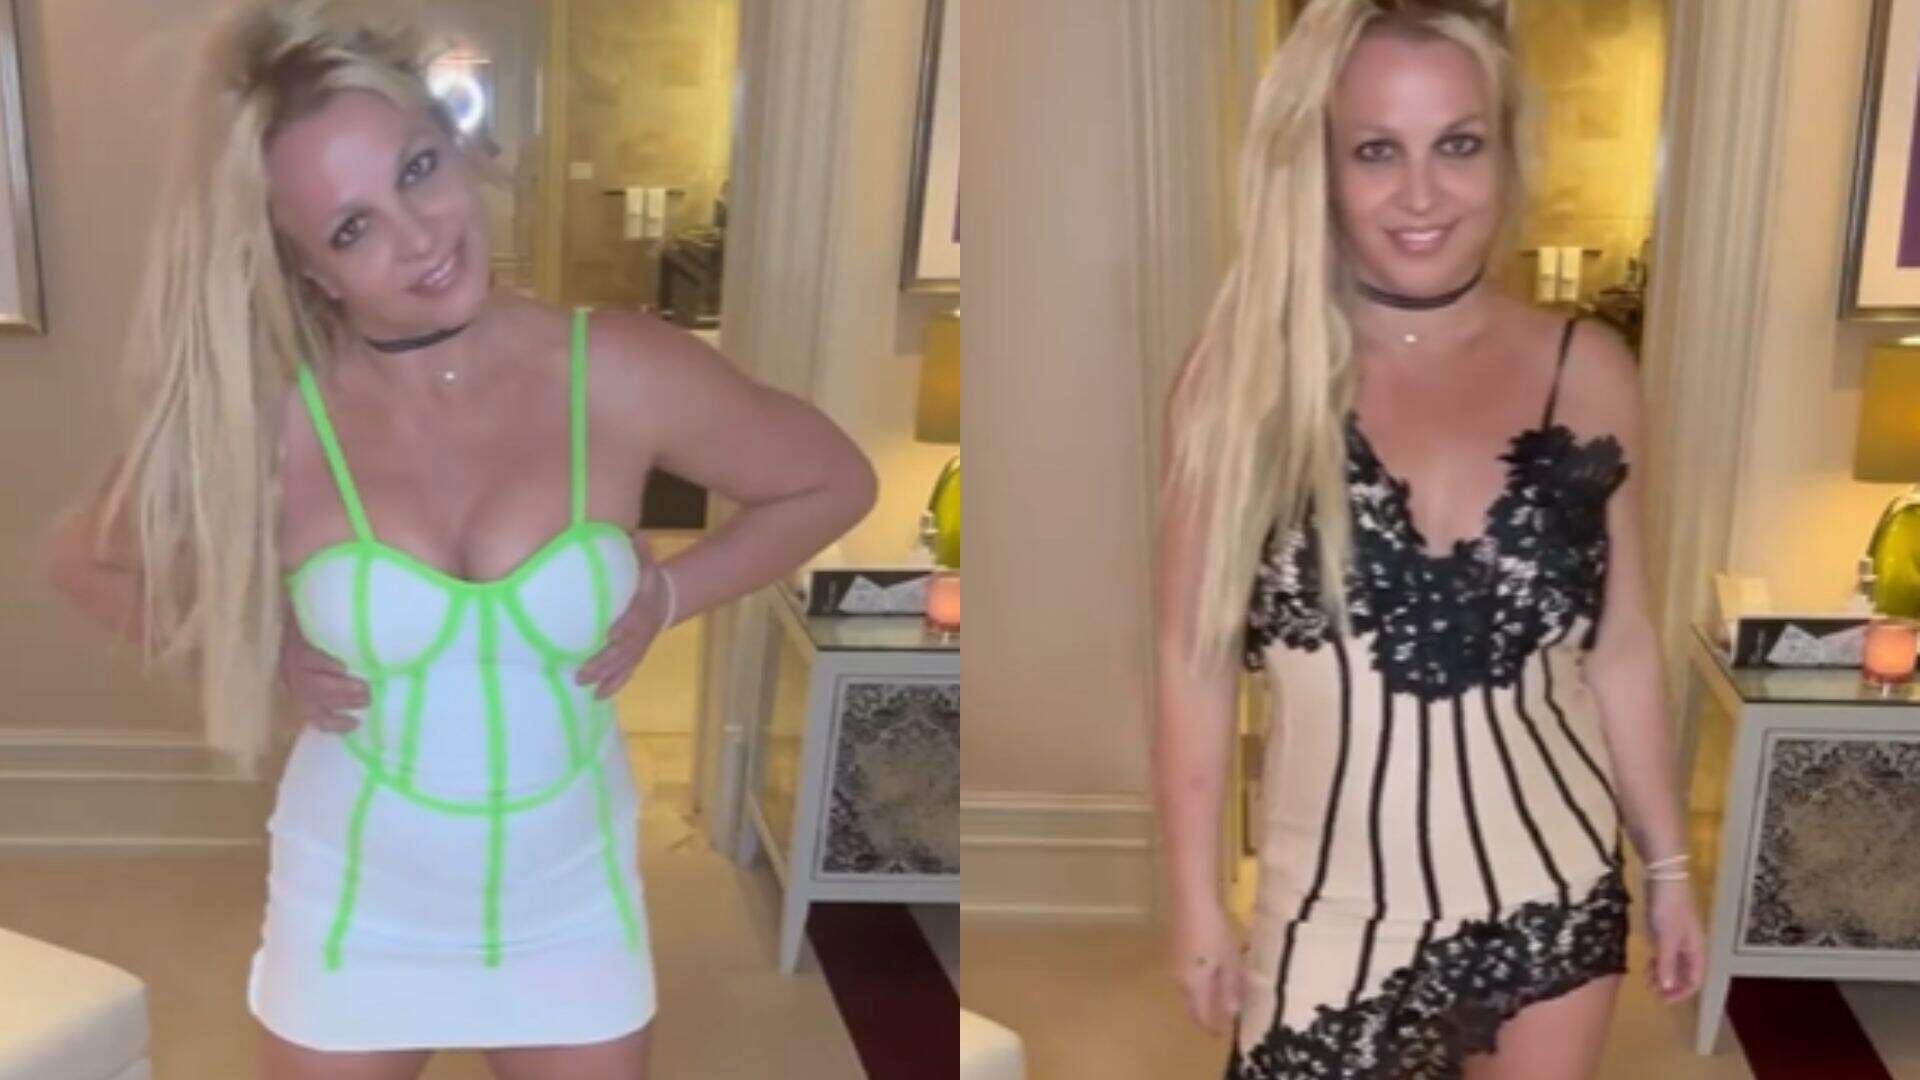 Sorridente, Britney Spears ignora prisão de Justin Timberlake e surge com looks ousados em novo vídeo - Metropolitana FM